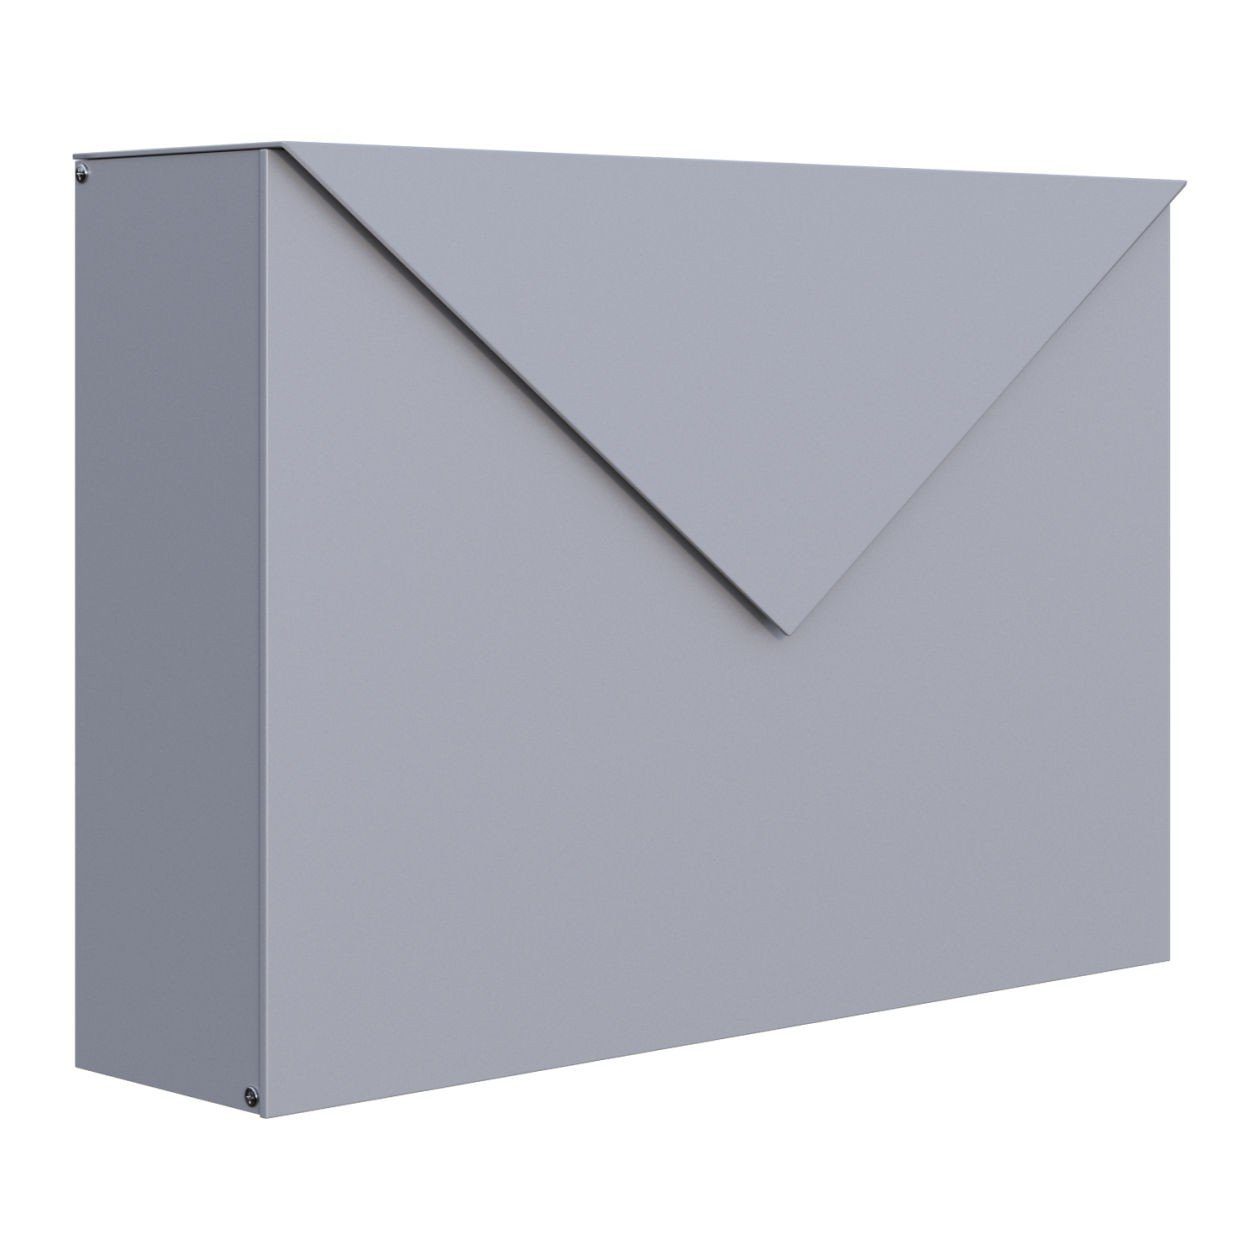 Bravios Briefkasten Briefkasten Letter Metallic Grau